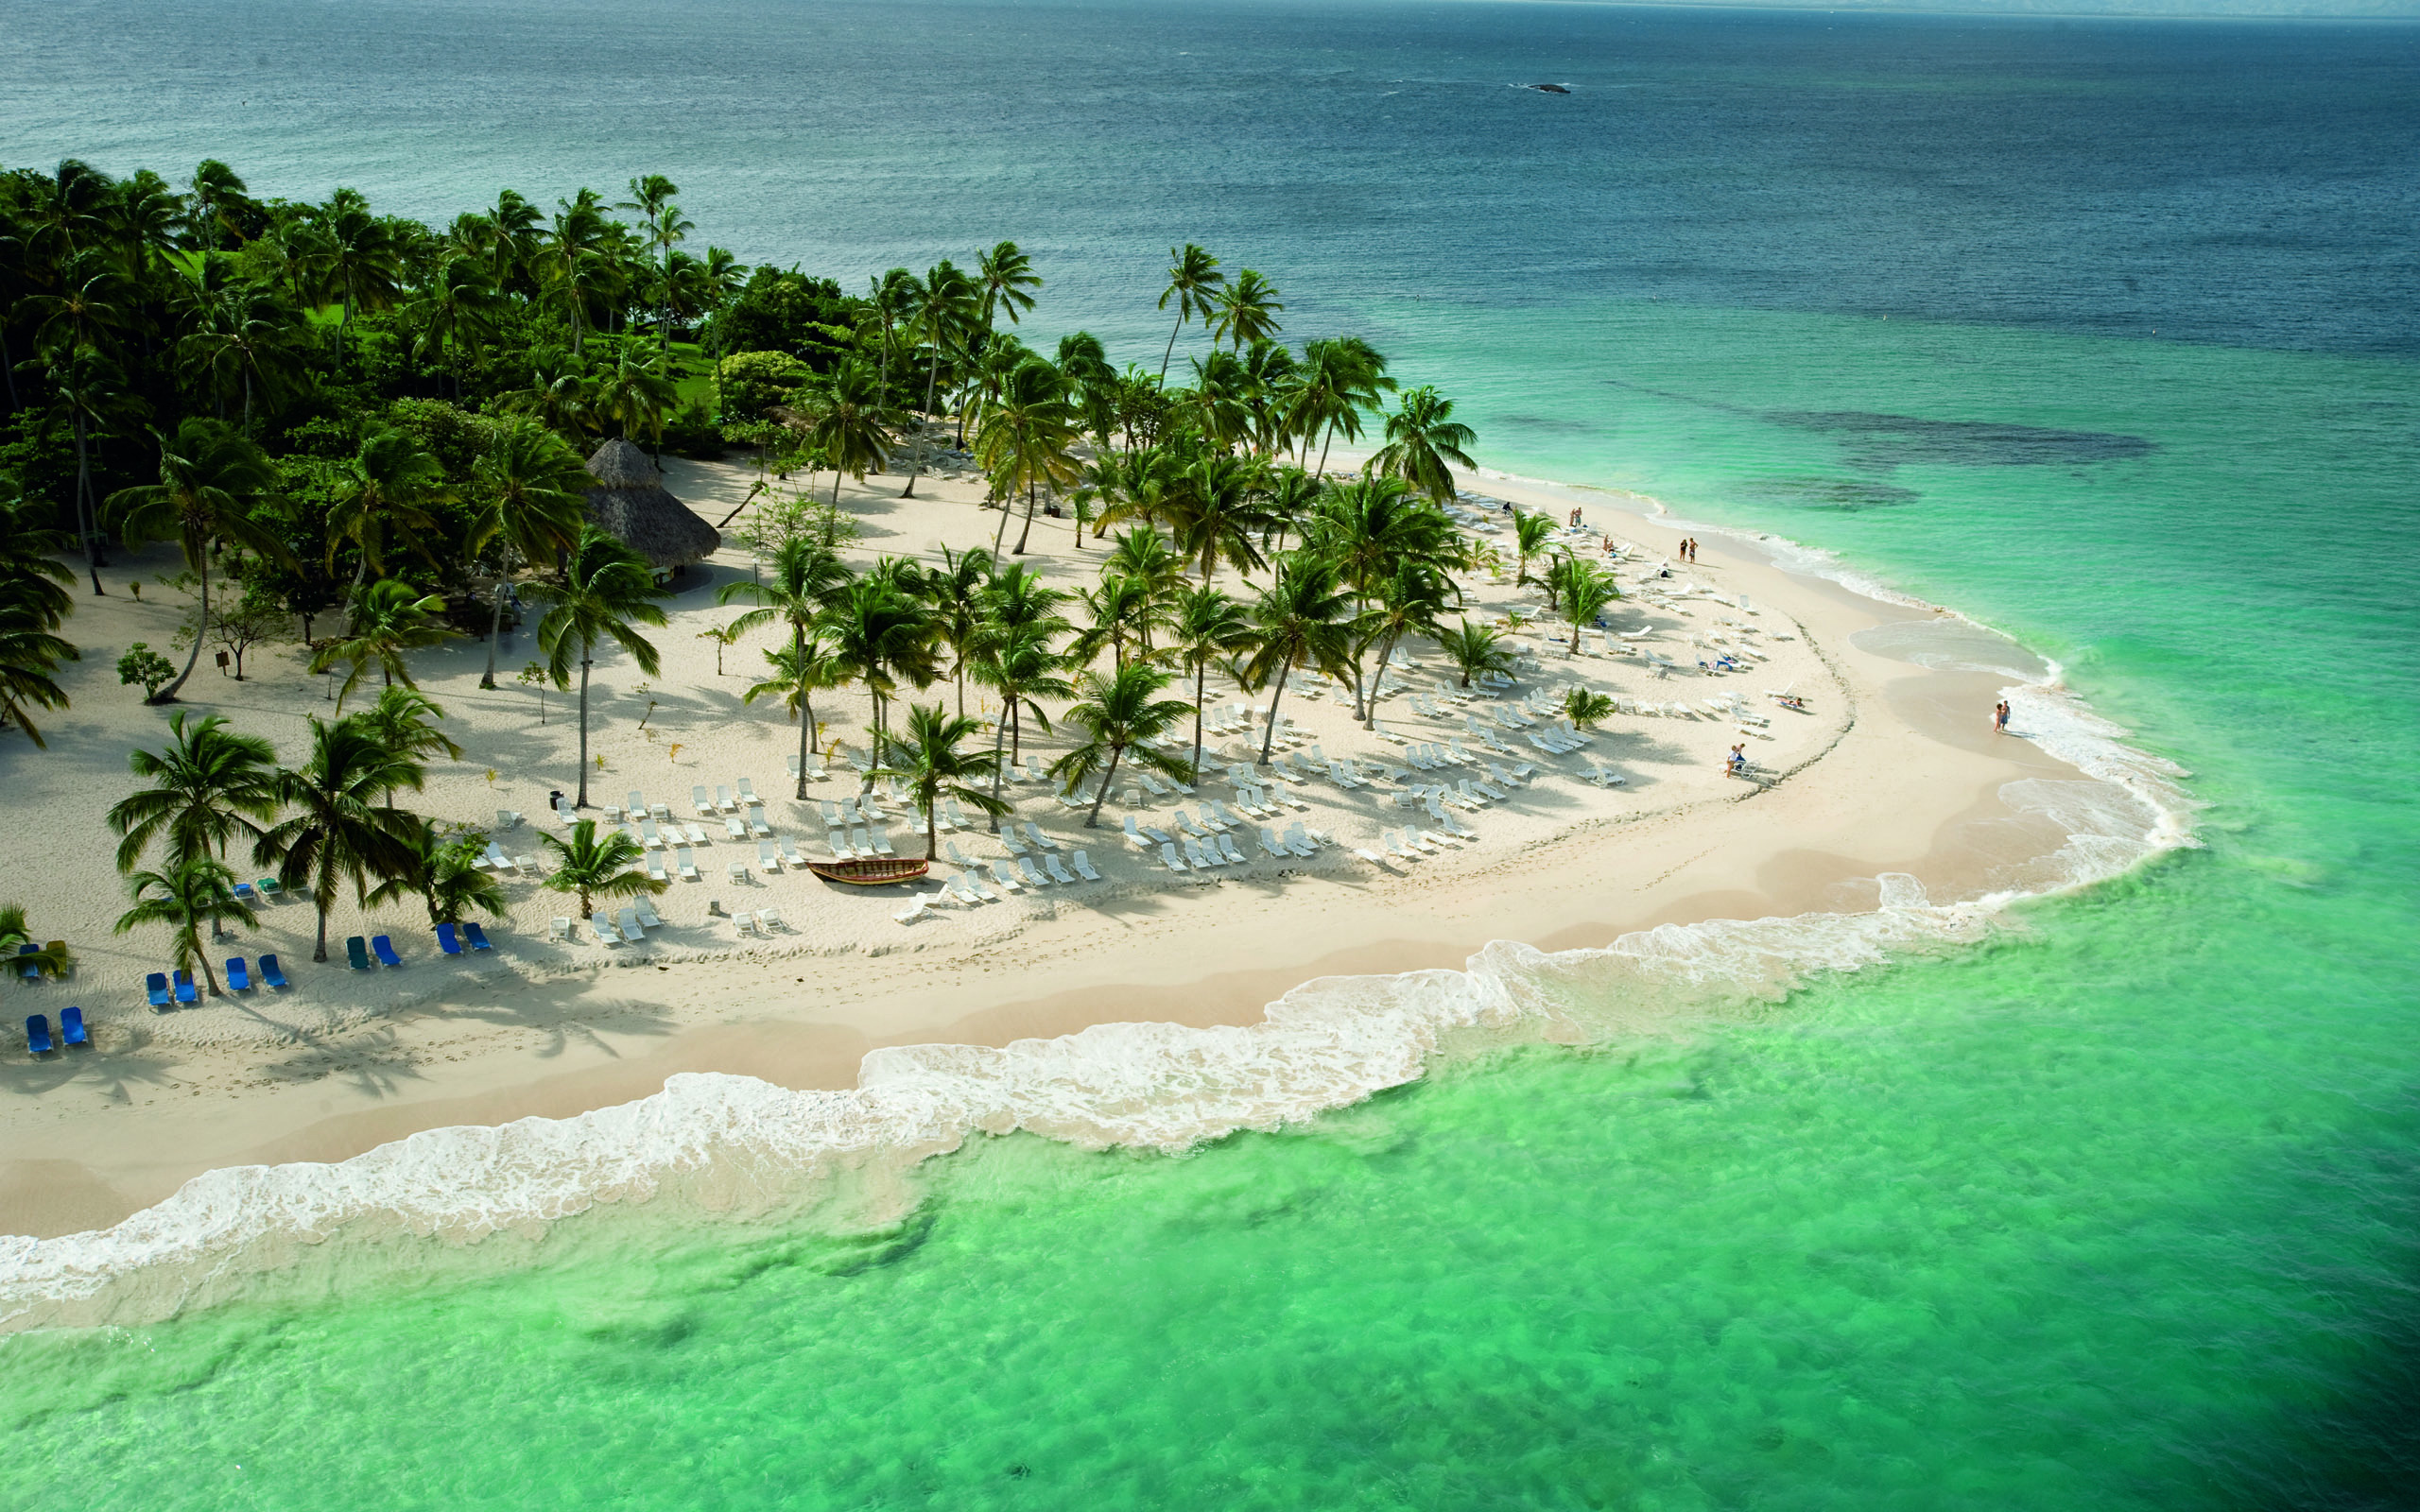 Descarga gratuita de fondo de pantalla para móvil de Mar, Playa, Océano, Tierra, Isla, Fotografía, Palmera, Tropico.